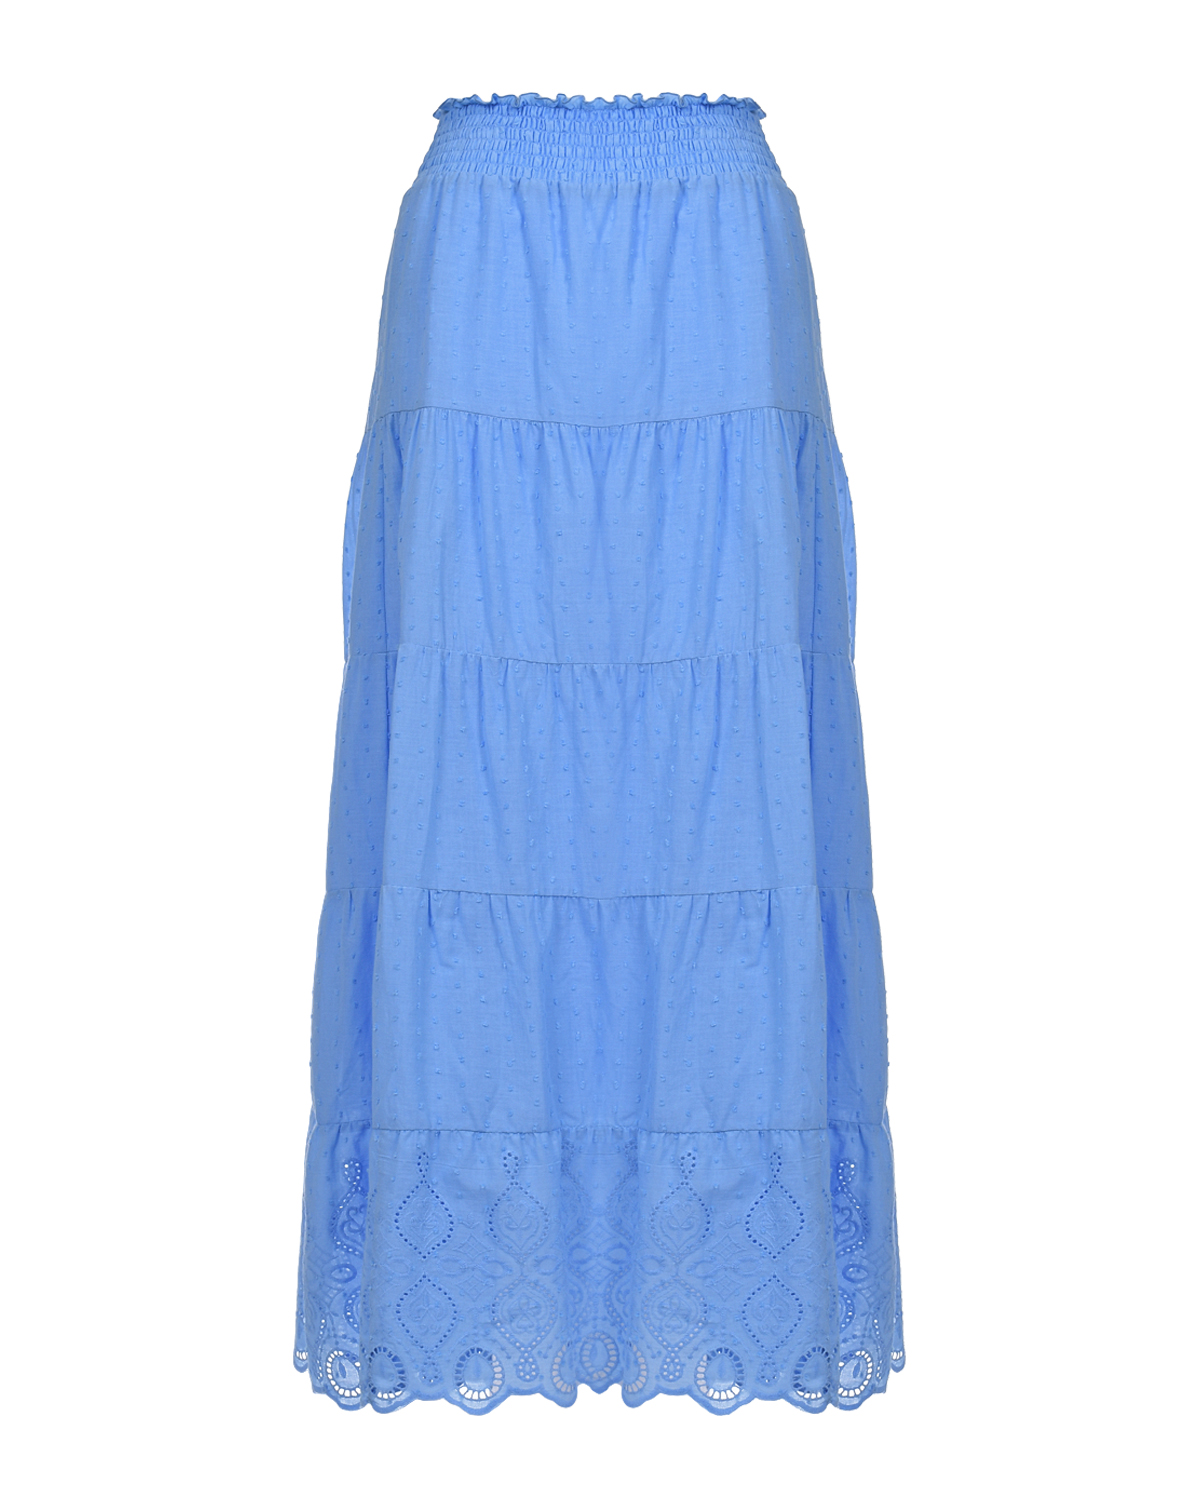 Голубая юбка с поясом на резинке Pietro Brunelli синяя юбка с растительным принтом pietro brunelli